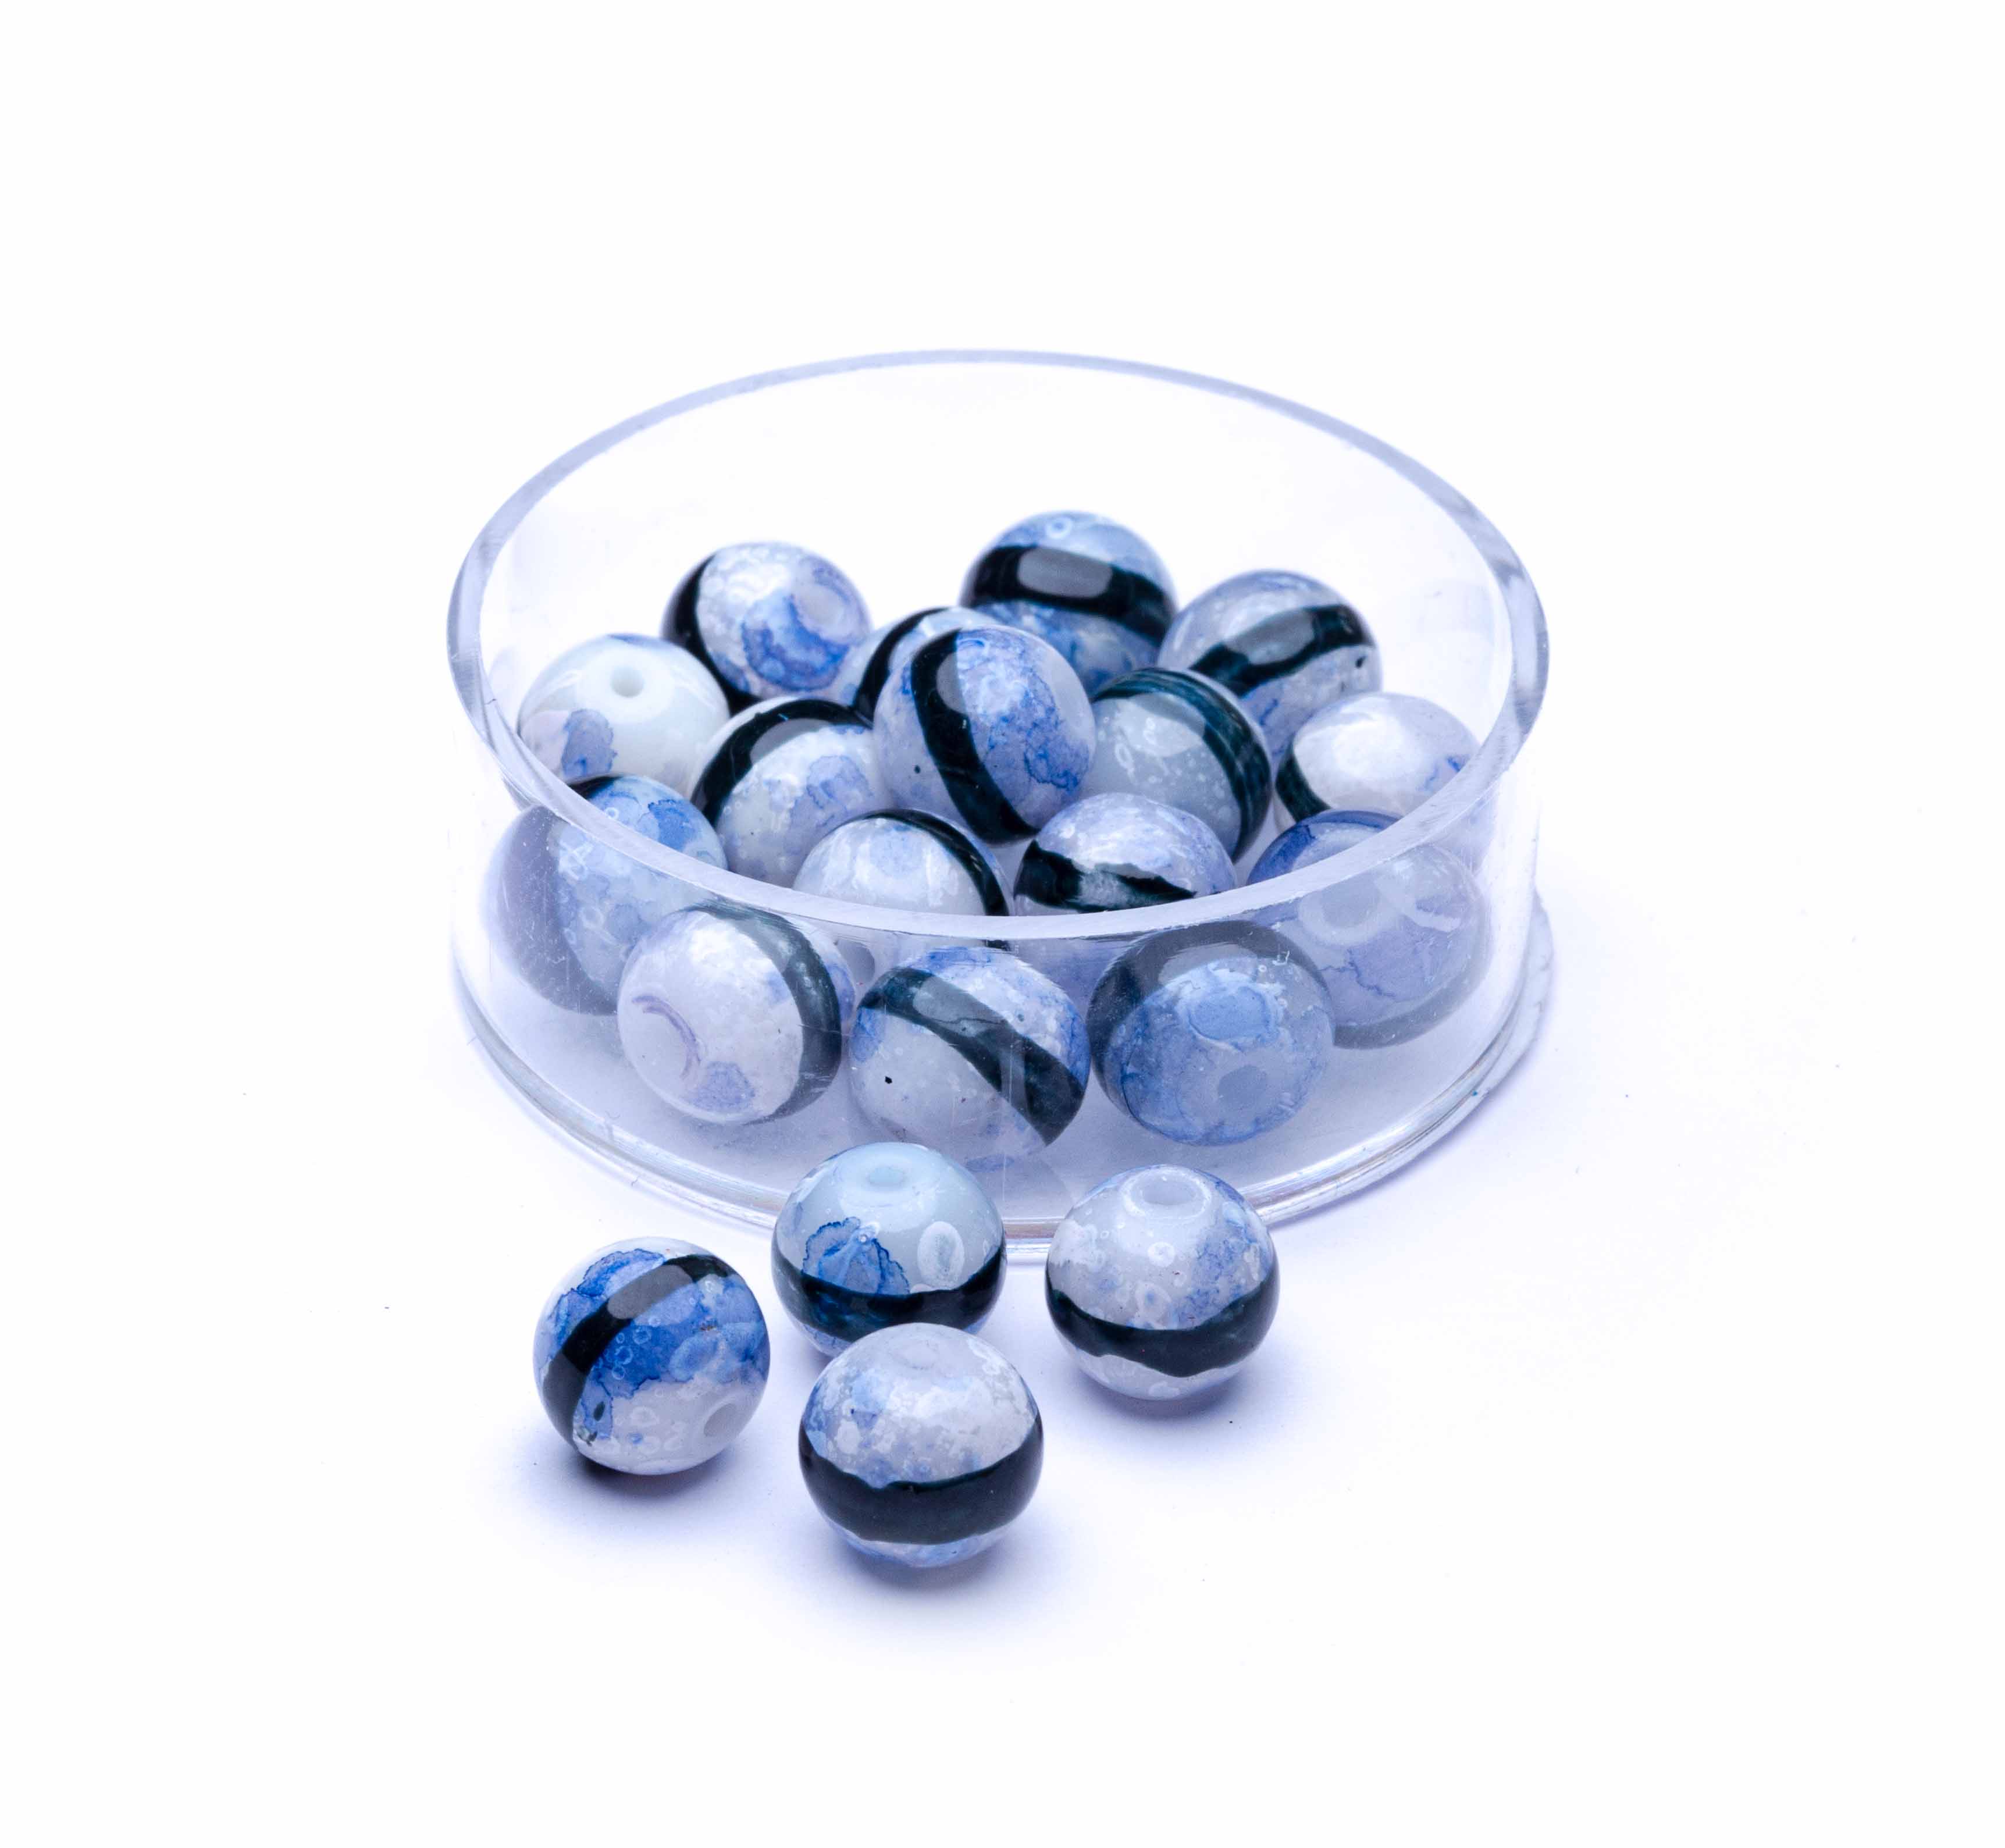 Glasperlen blau mit schwarzem Strich, 6 mm,  20 Stück/Dose